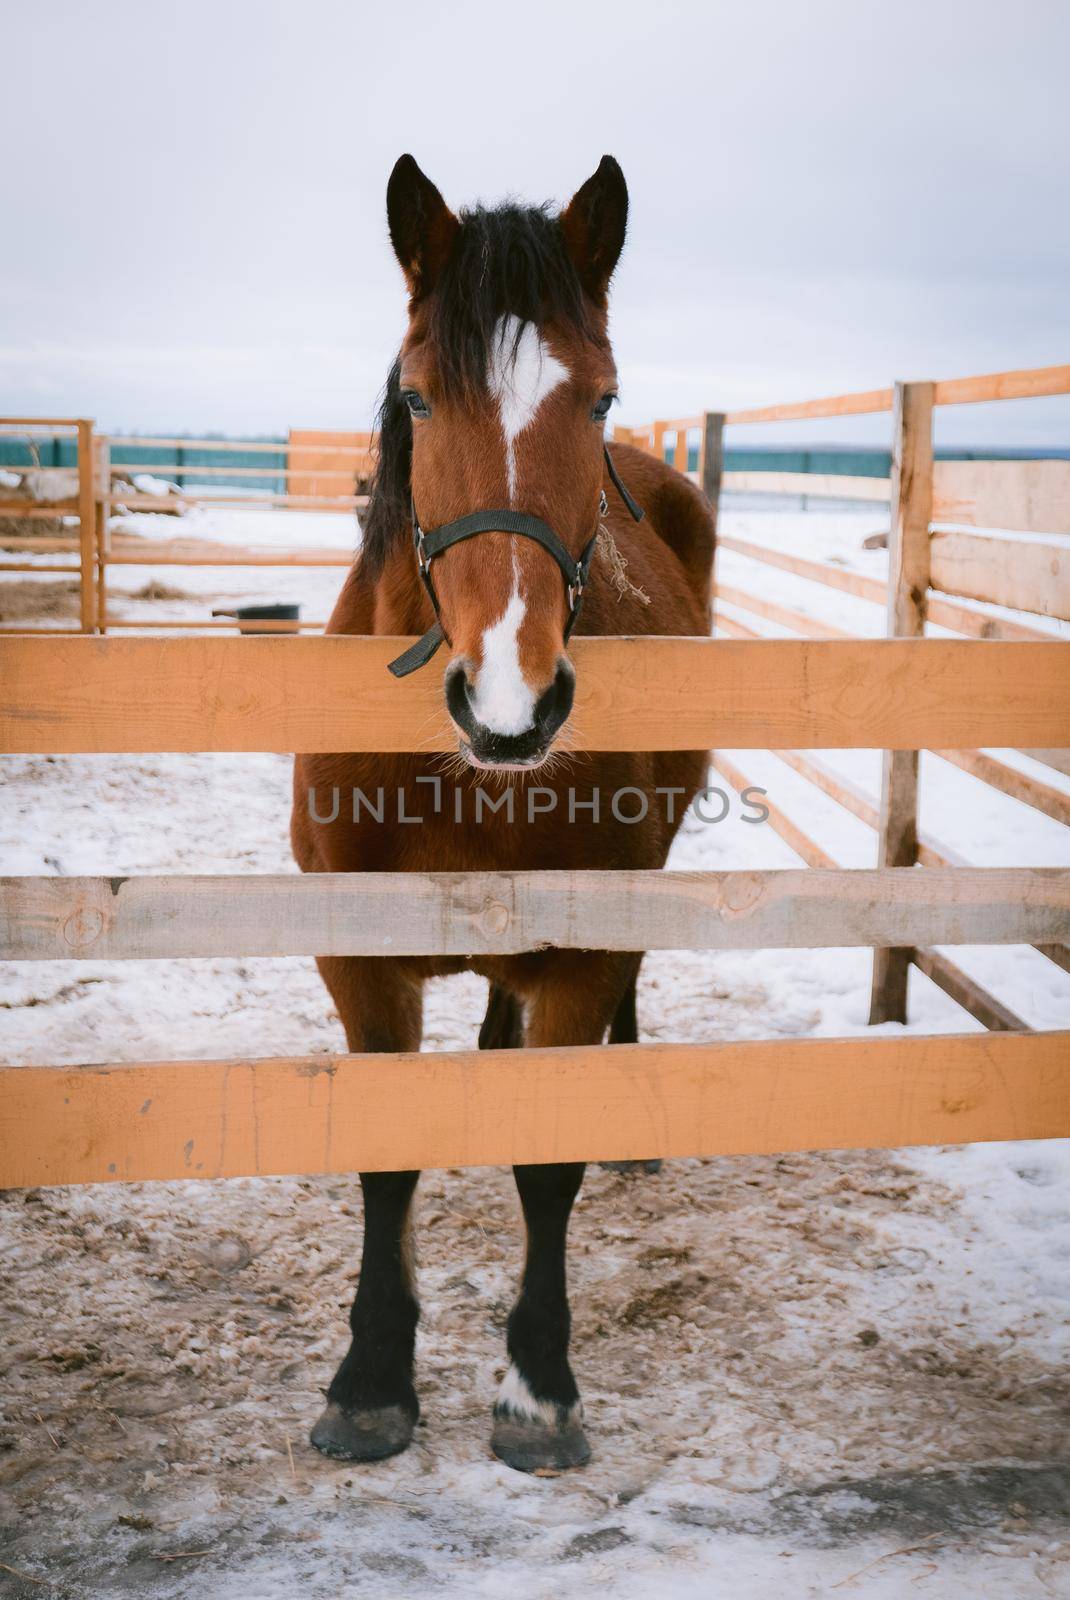 Horse at horse paddock during winter season